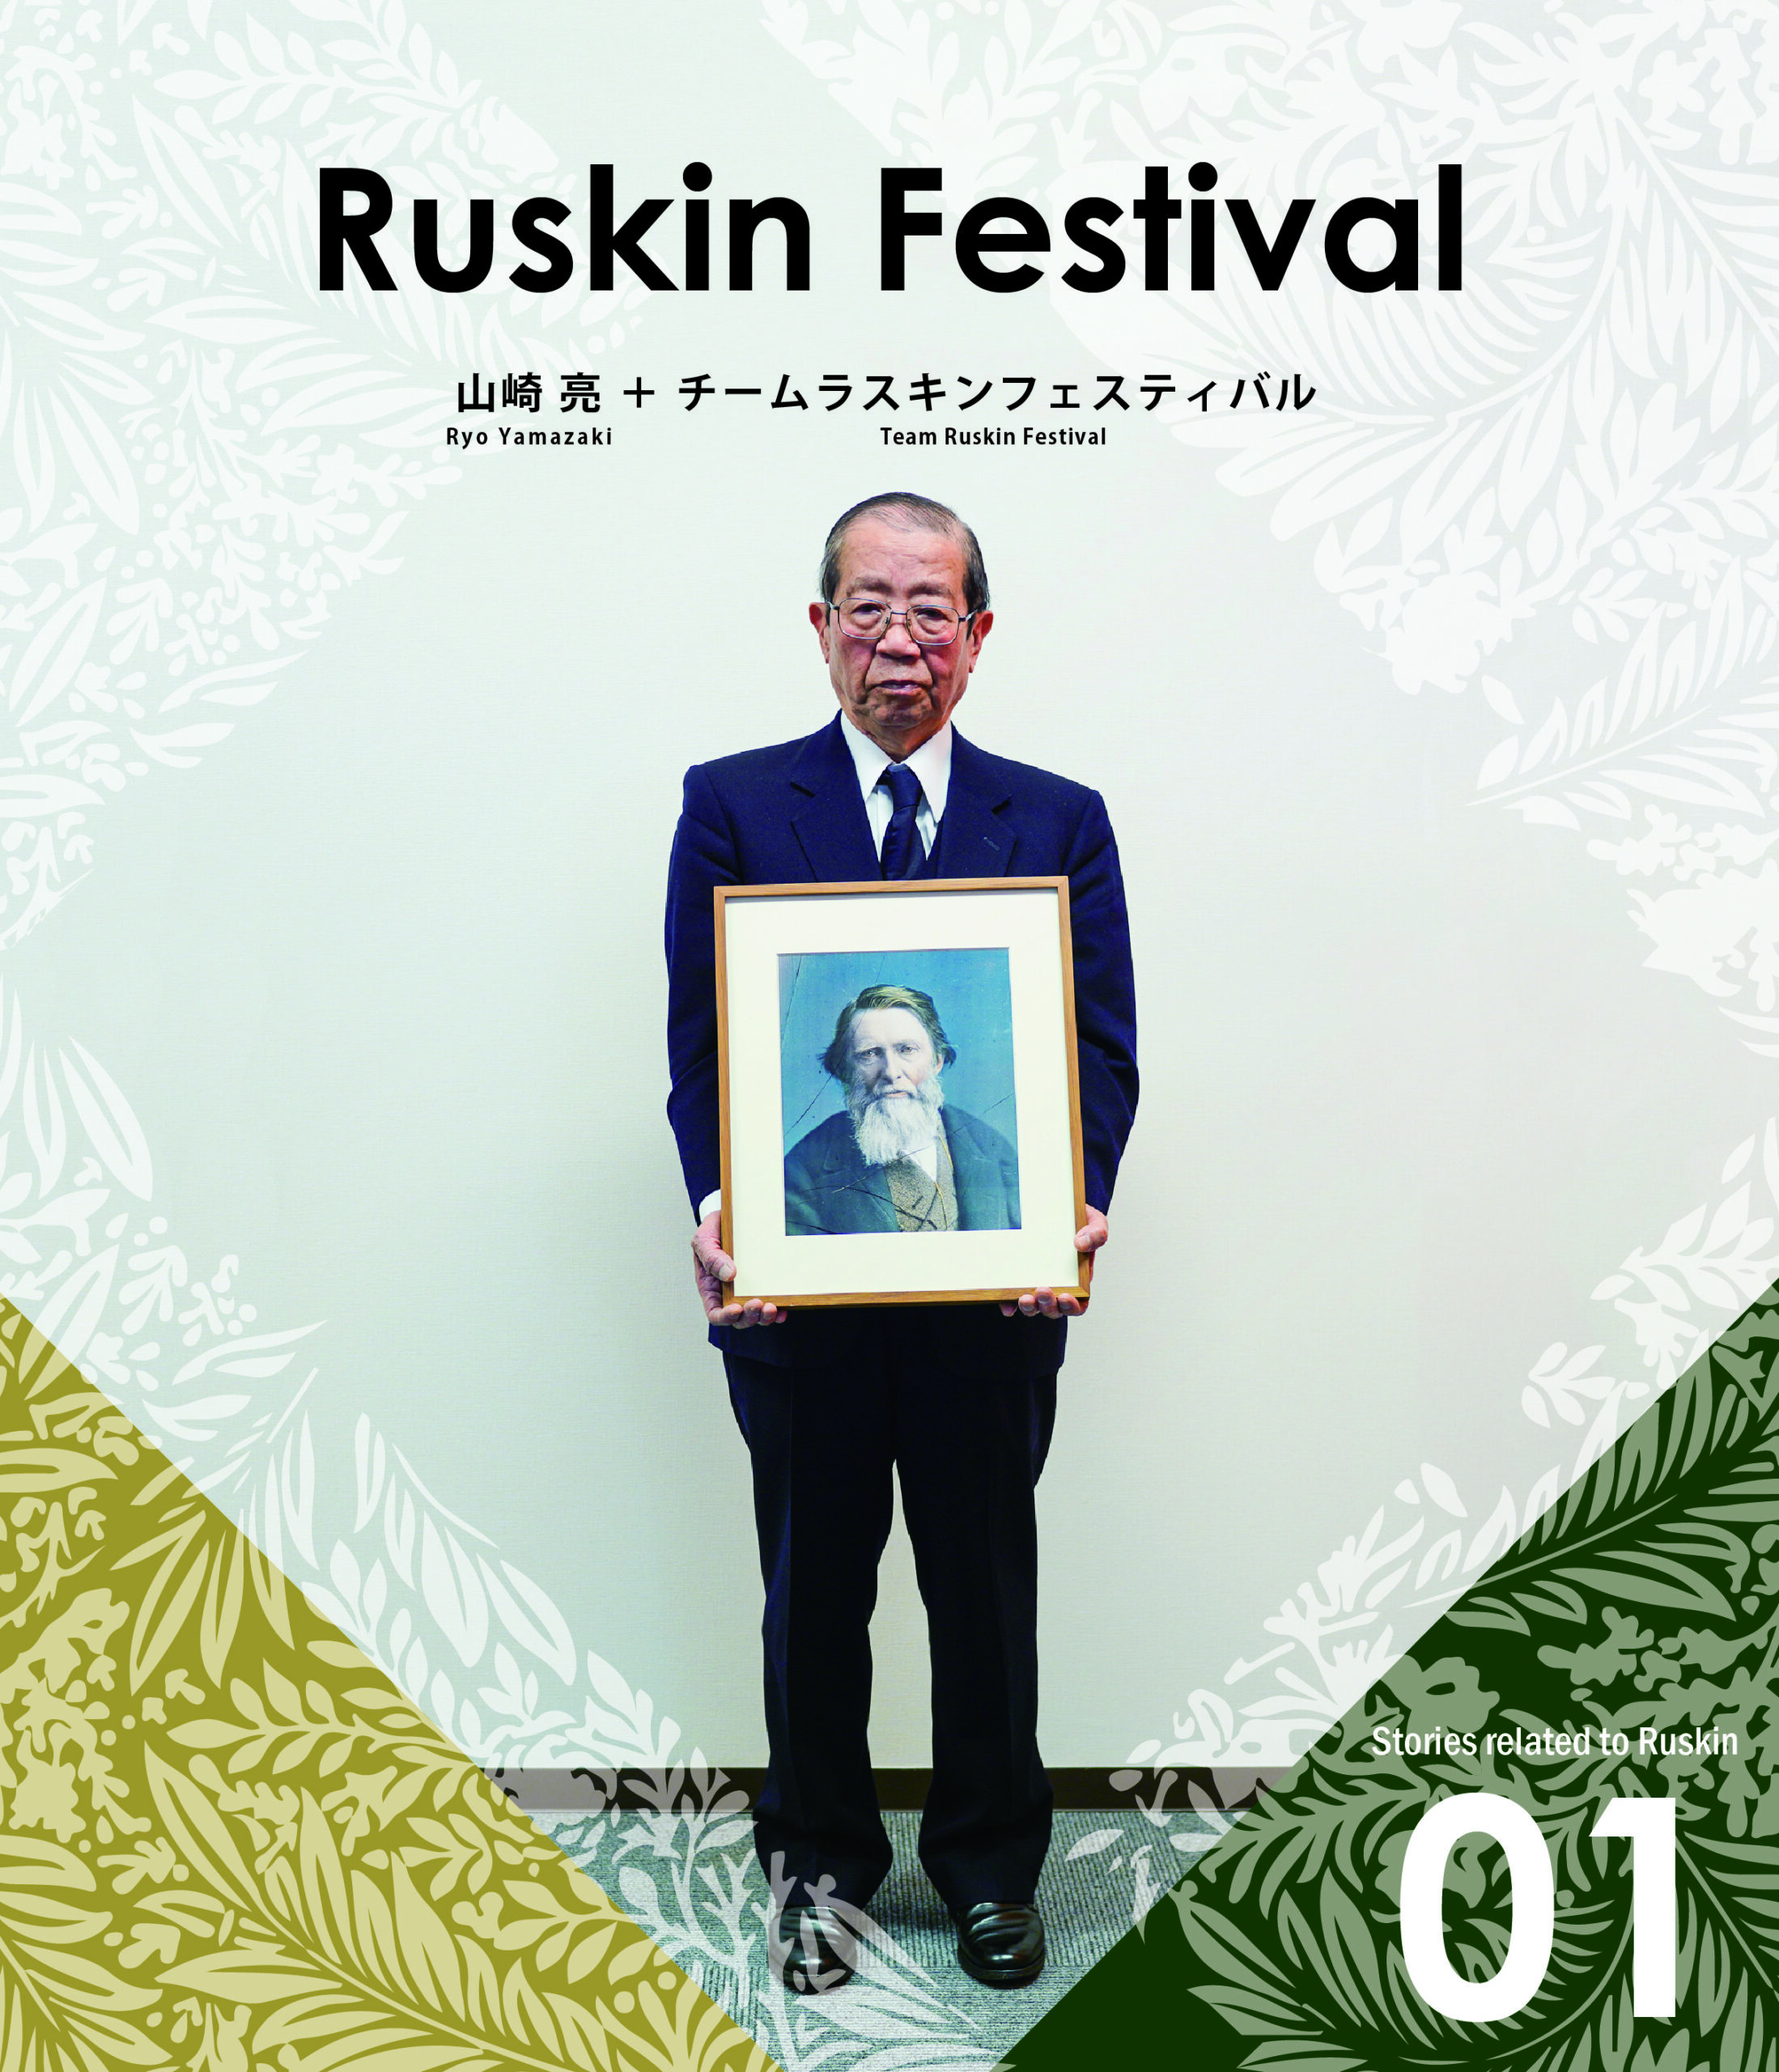 Ruskin Festival